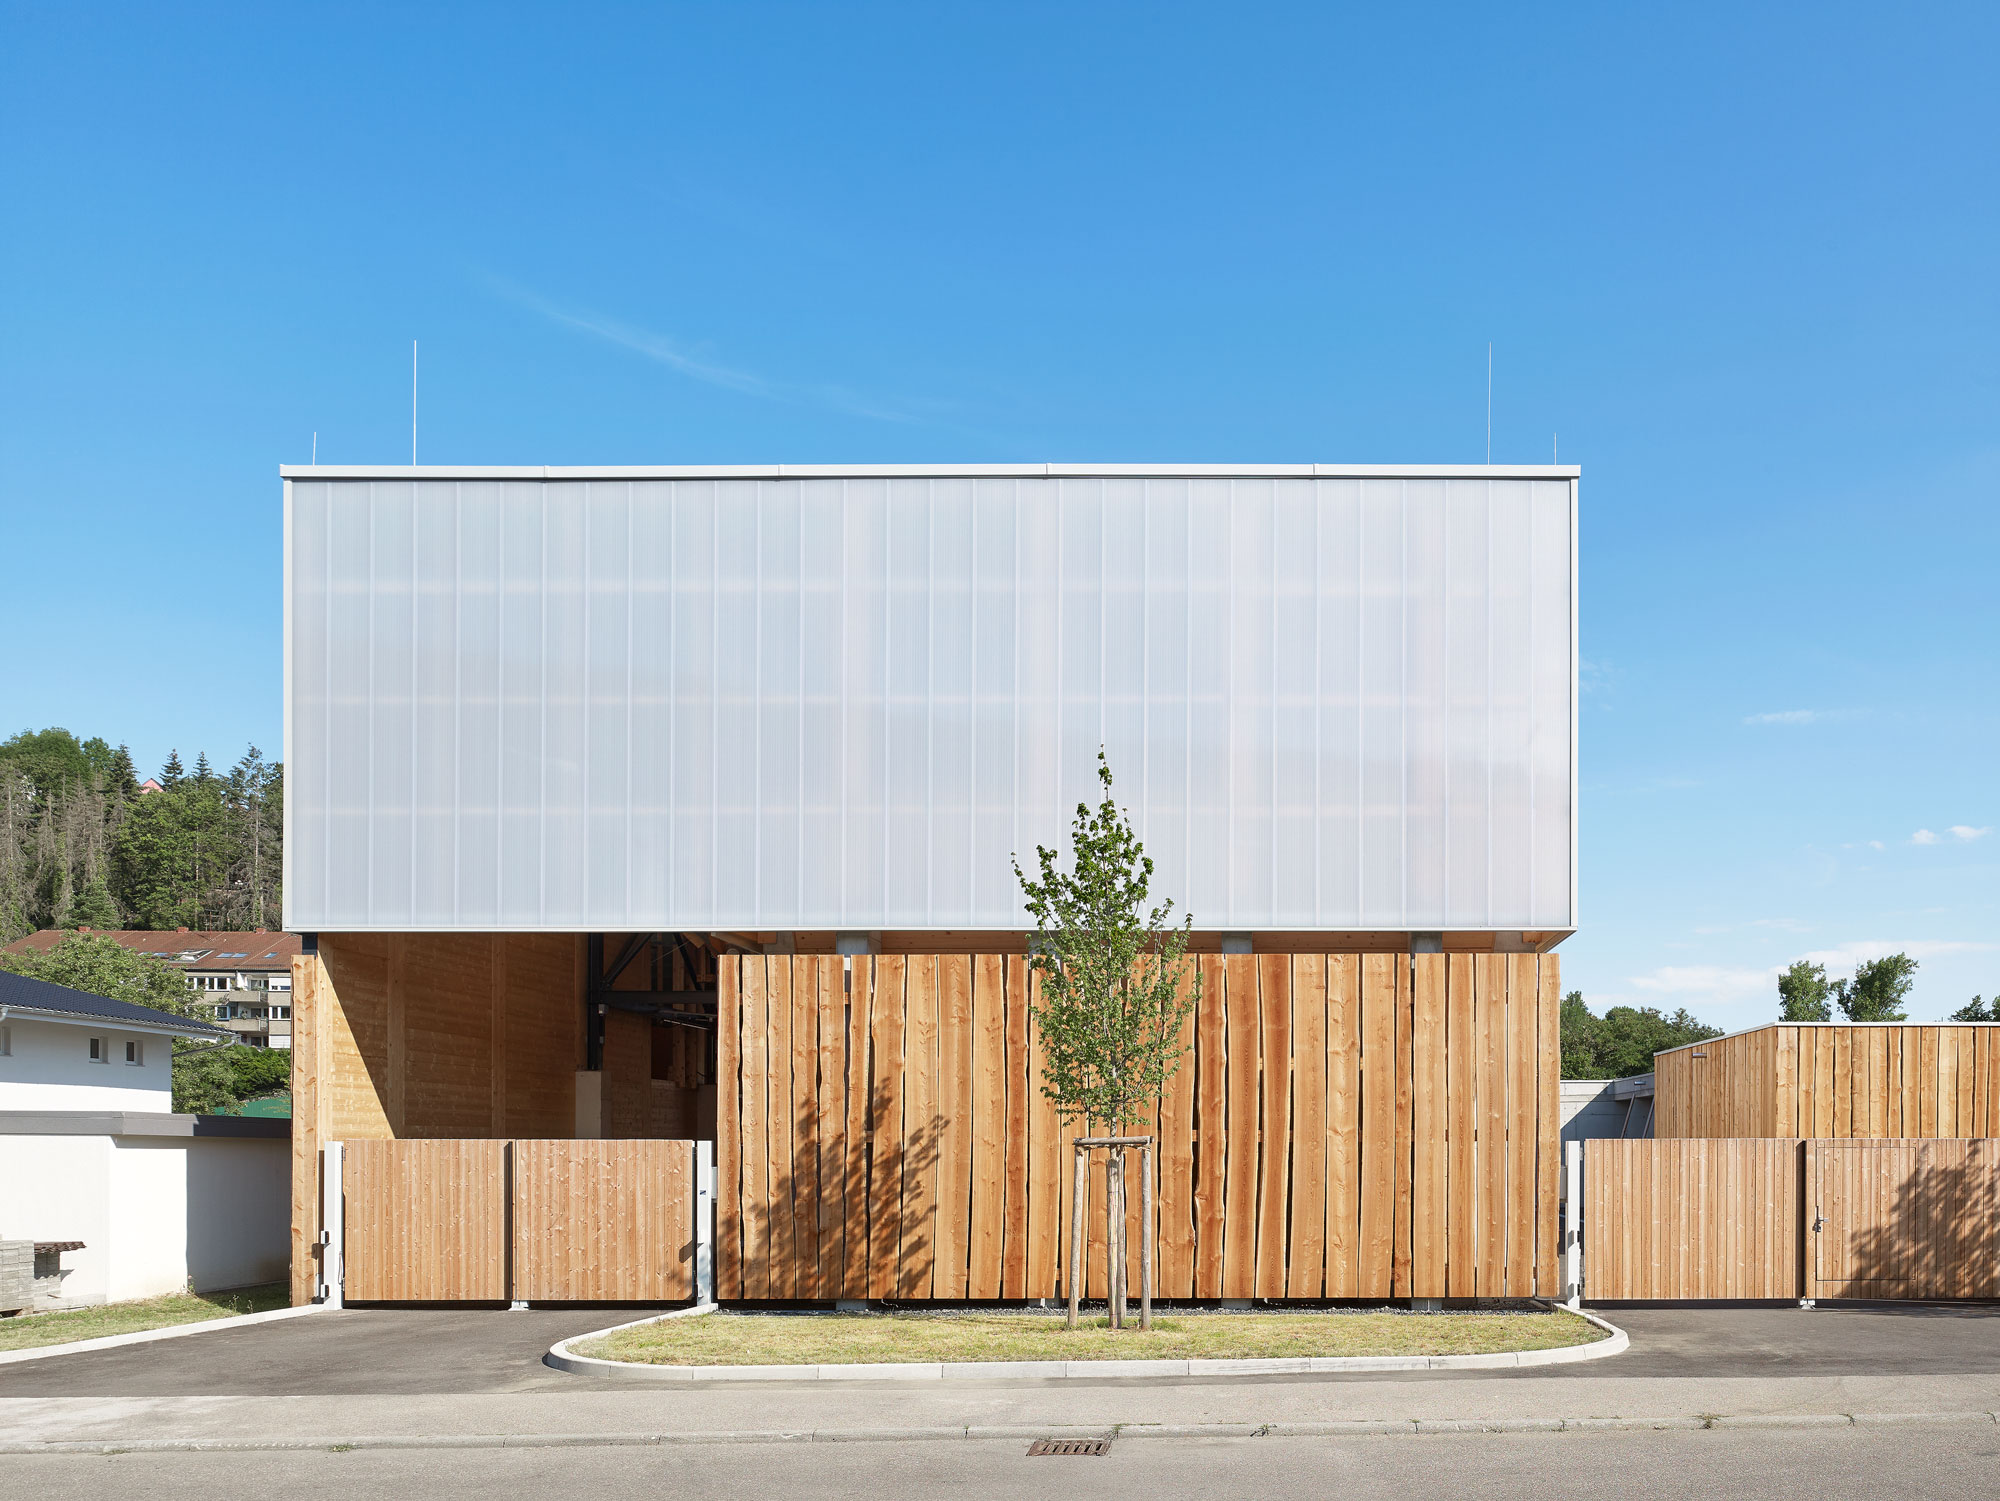 Außenperspektive Frontalansicht Hauptgebäude mit Holz und Polycarbonat Fassade, AWS Betriebshof Vogelsang, Stuttgart West/DE